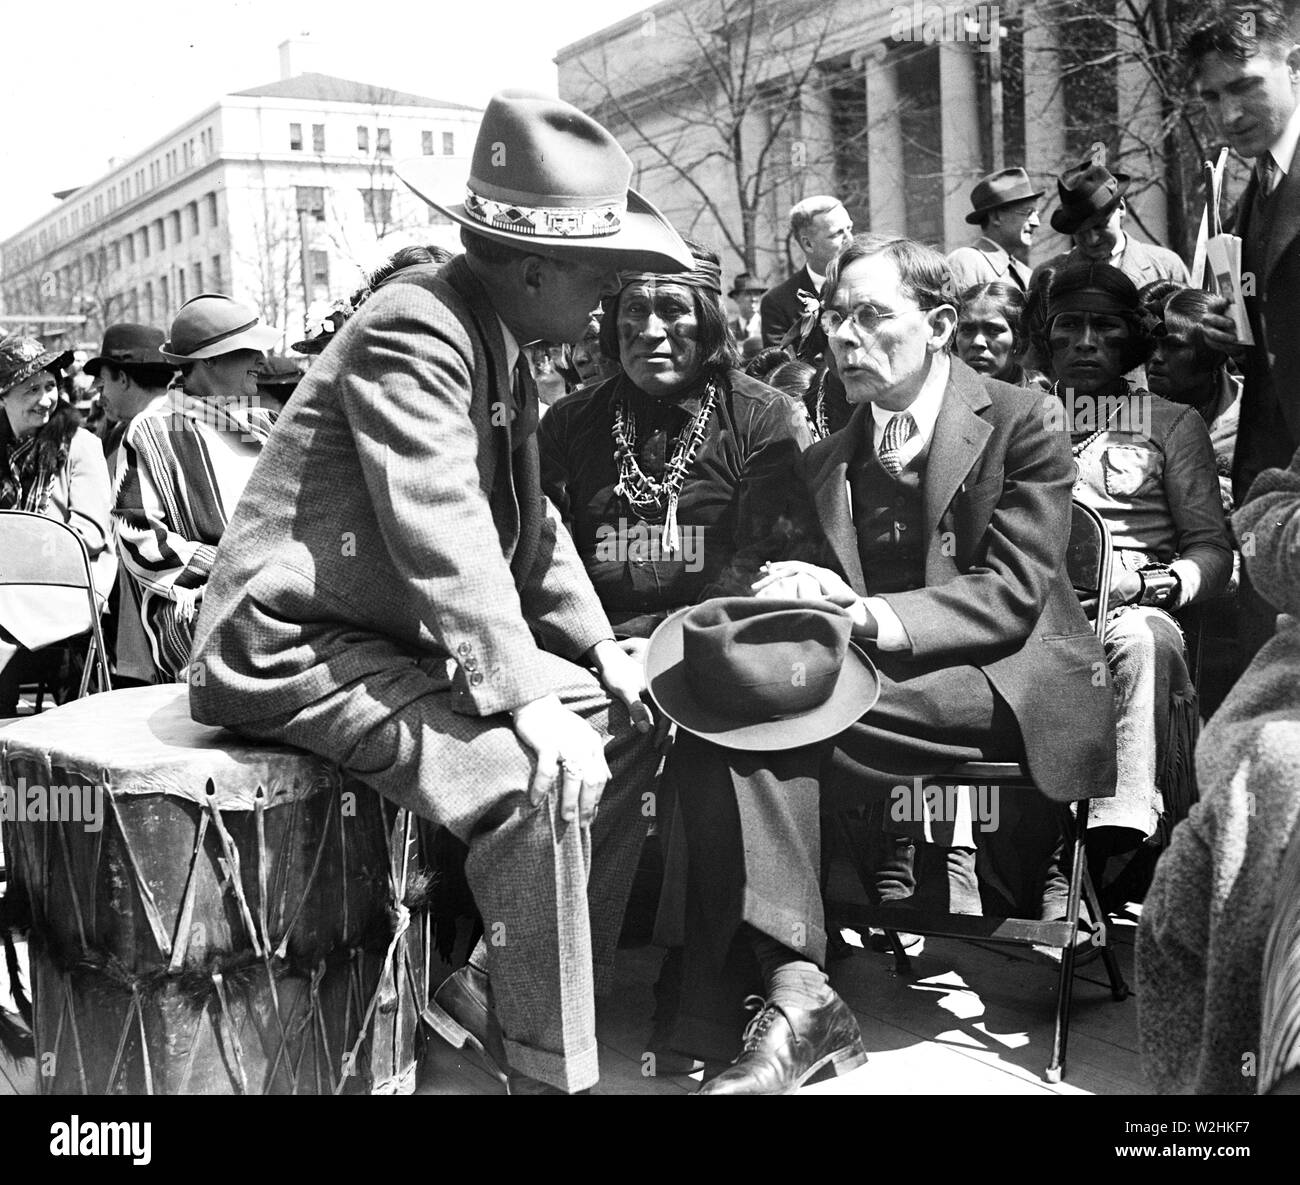 Rencontre avec les Indiens d'Amérique, Washington, D.C. / Rencontre avec les Indiens américains dans les années 1930 ca. 1936 Banque D'Images